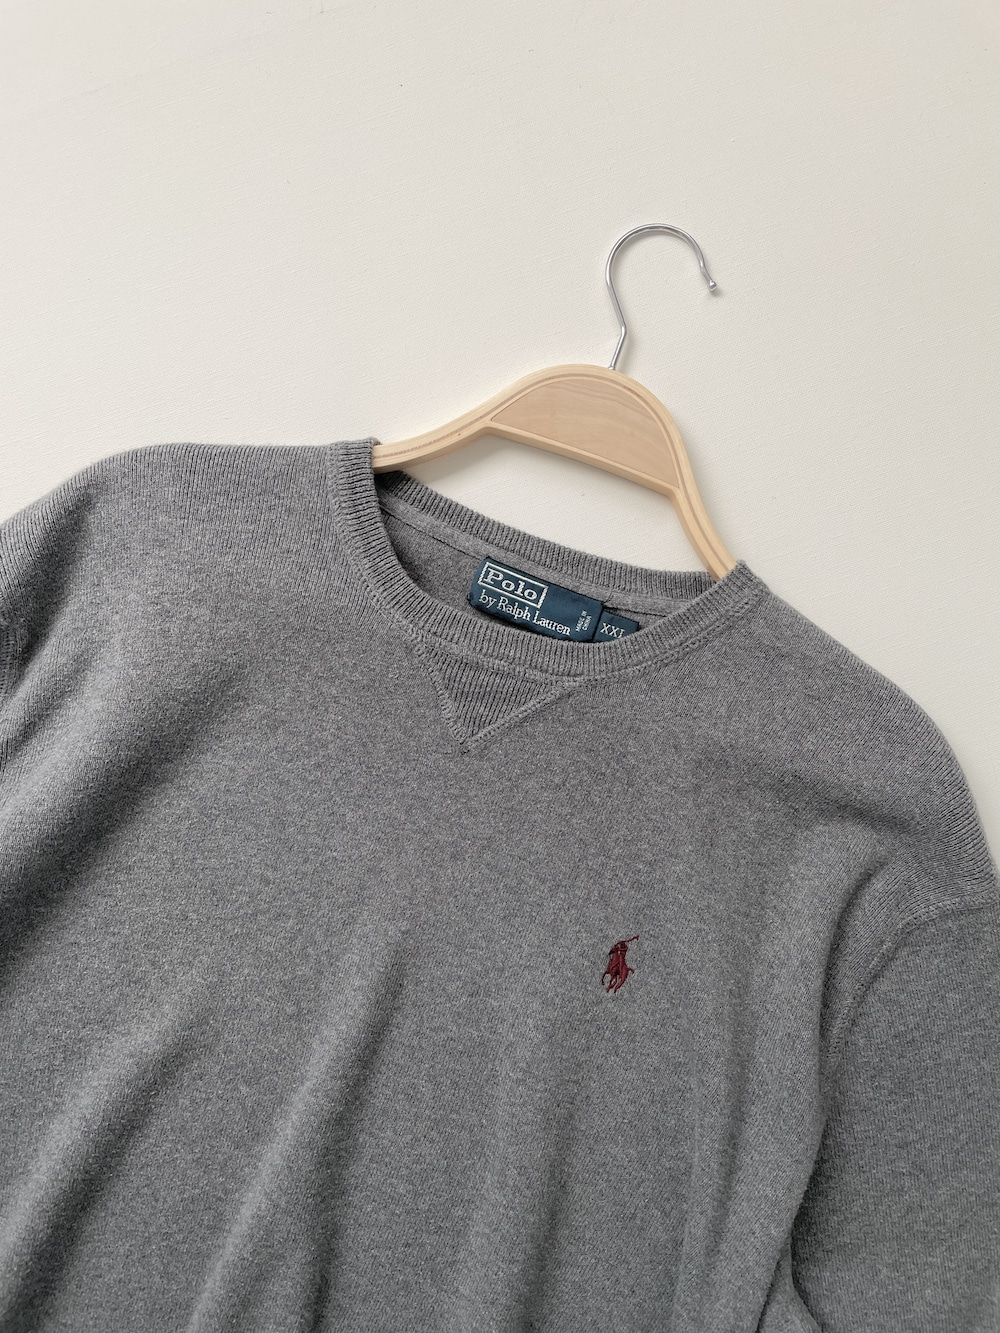 [ XXL ] Polo Ralph Lauren Sweatshirt Sweater (7438)